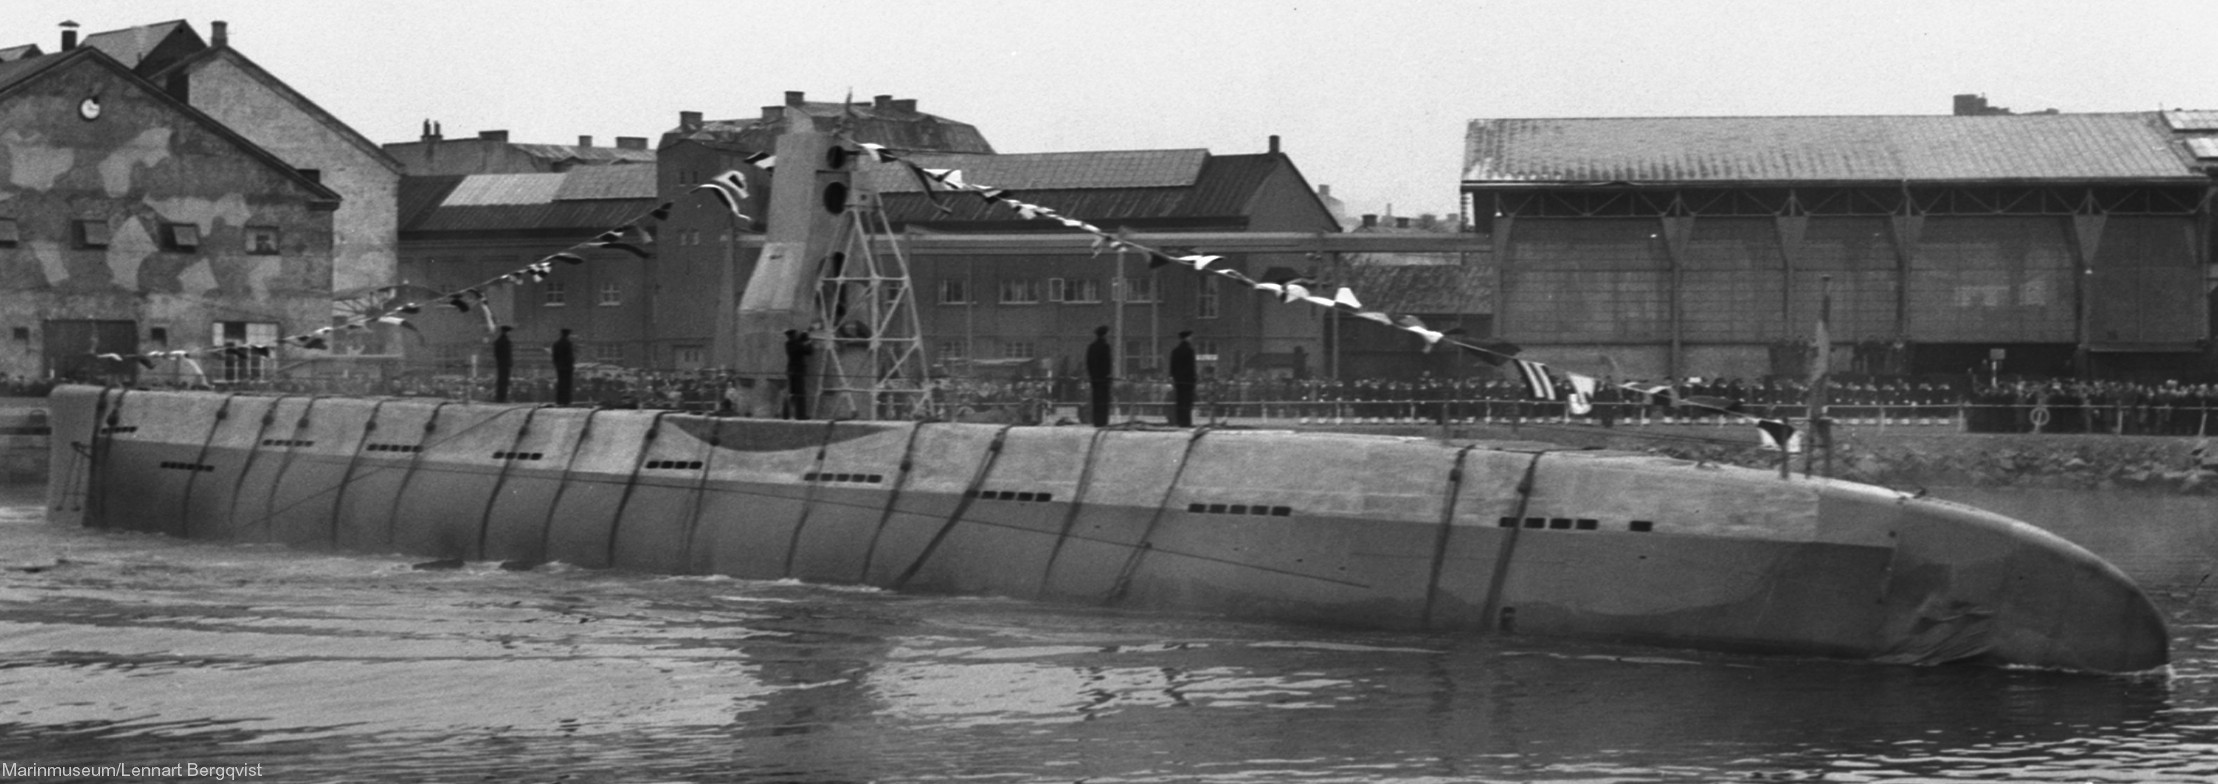 hms hswms illern hajen a10 class attack submarine ubåt swedish navy svenska marinen försvarsmakten 07